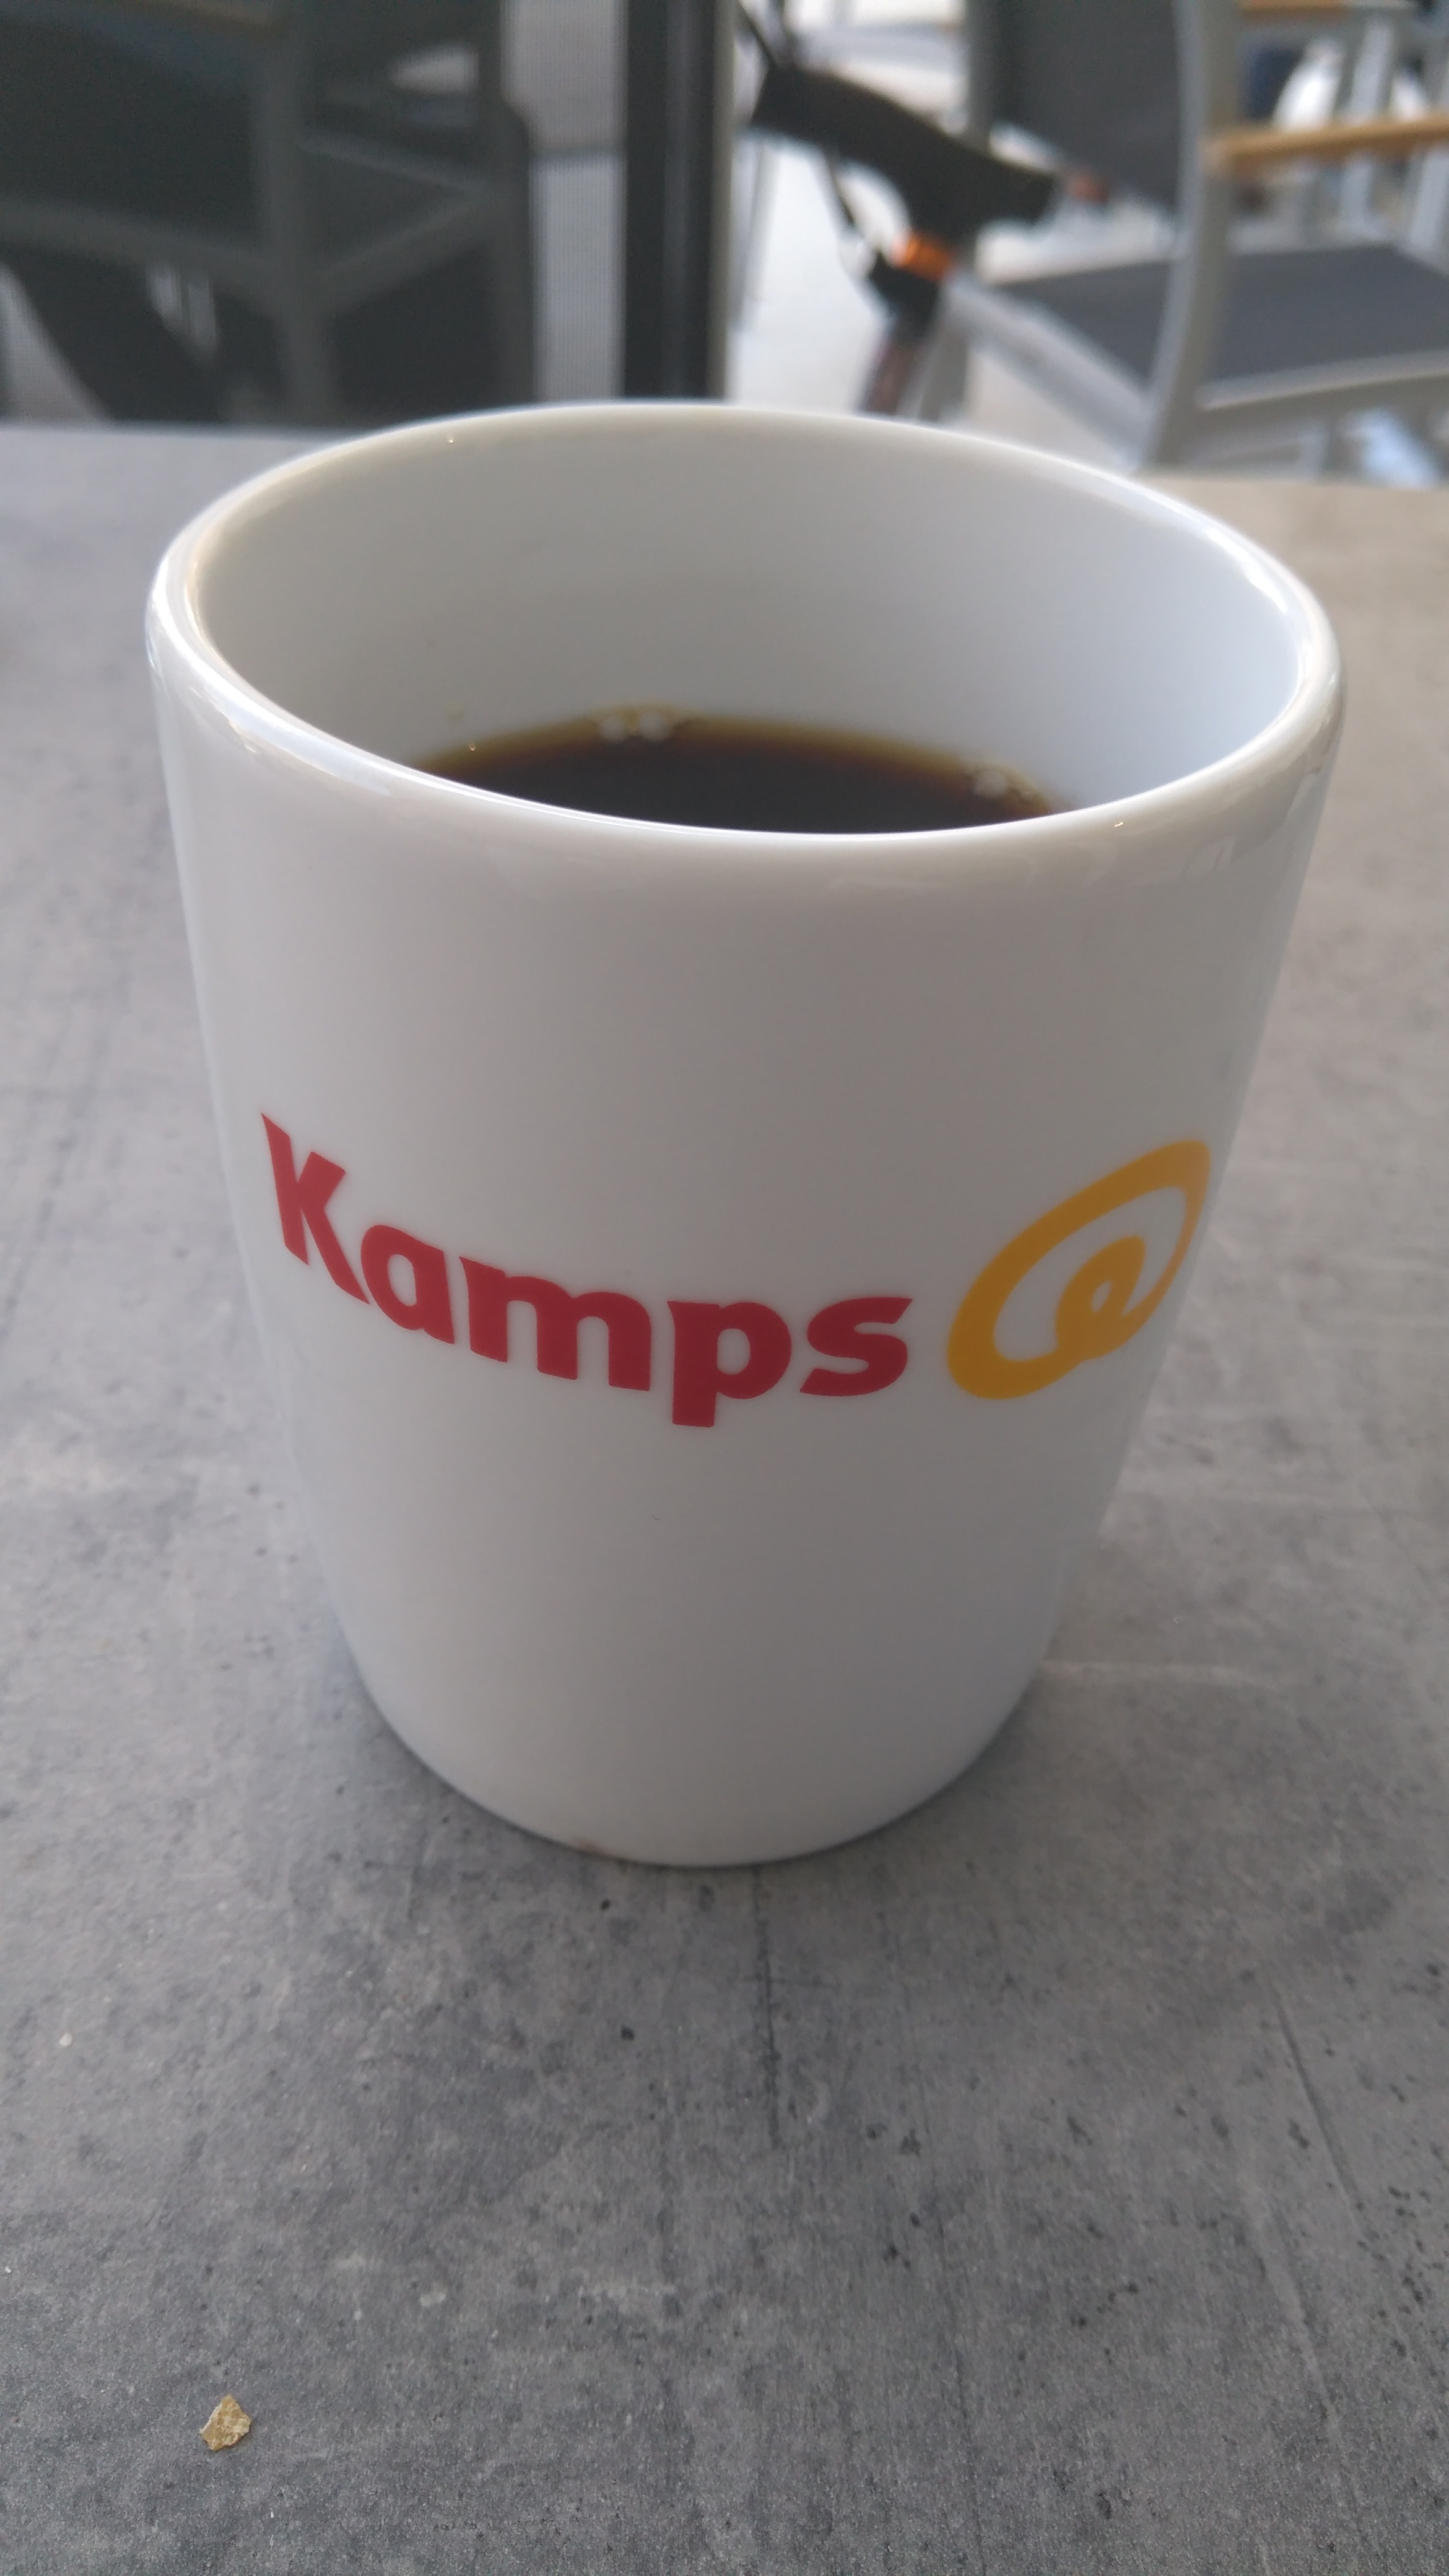 Bild 2 Kamps GmbH in Wuppertal